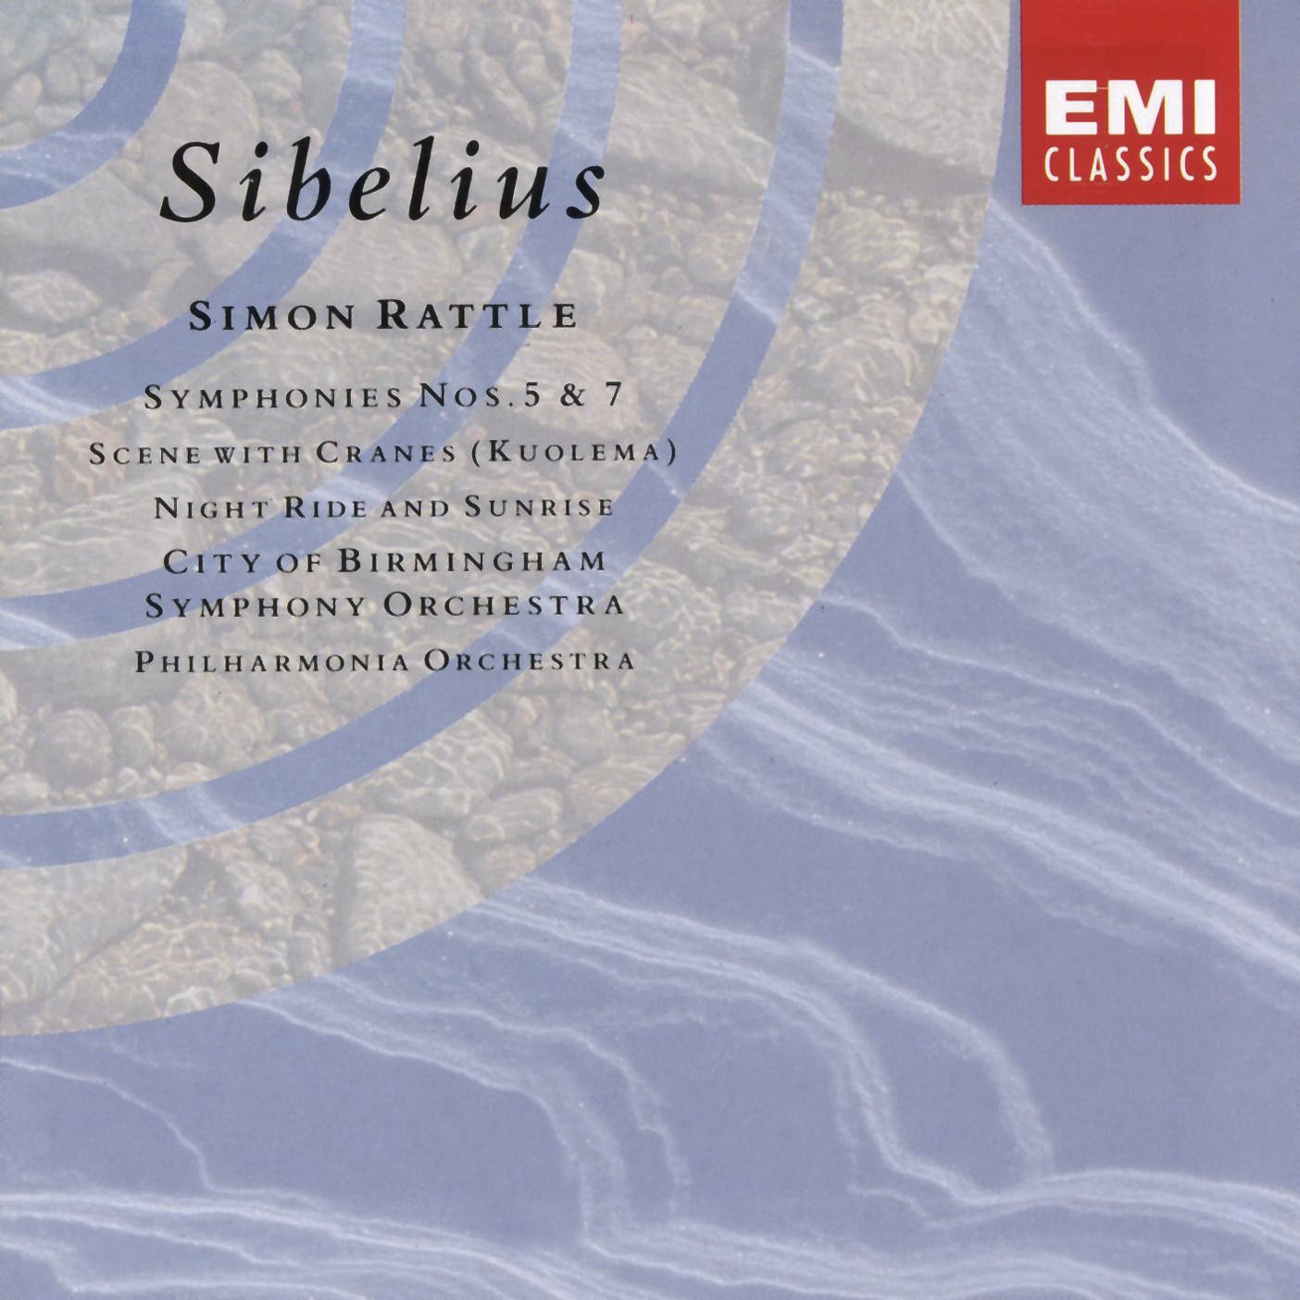 Sibelius: Symphony No. 5 in E-flat, Op. 82: I. Tempo molto moderato-Allegro moderato-Presto